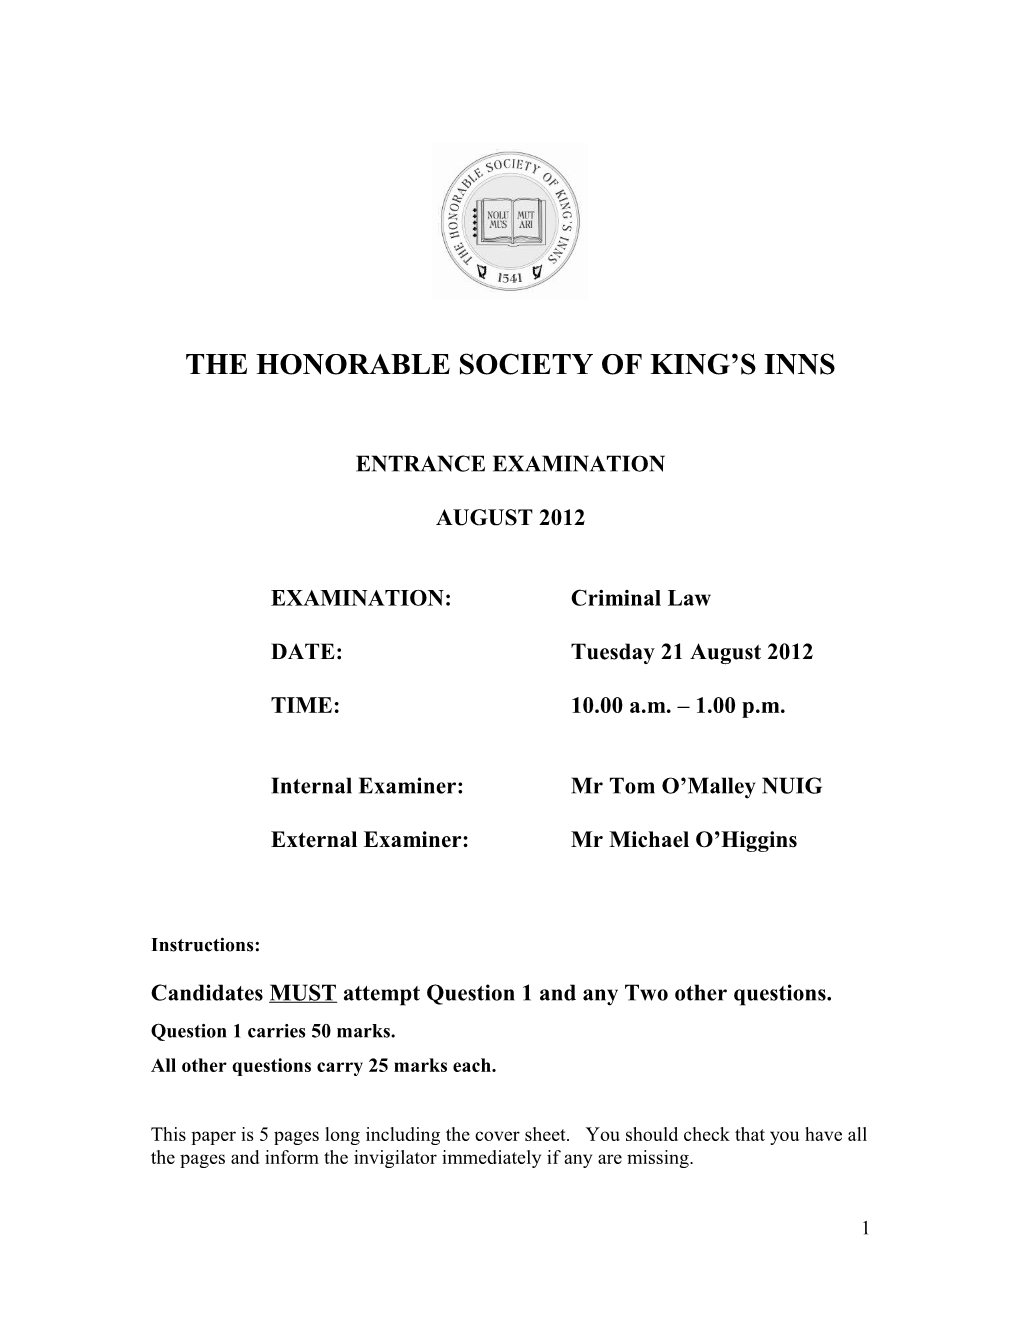 Kings Inns Criminal Law Paper 2012